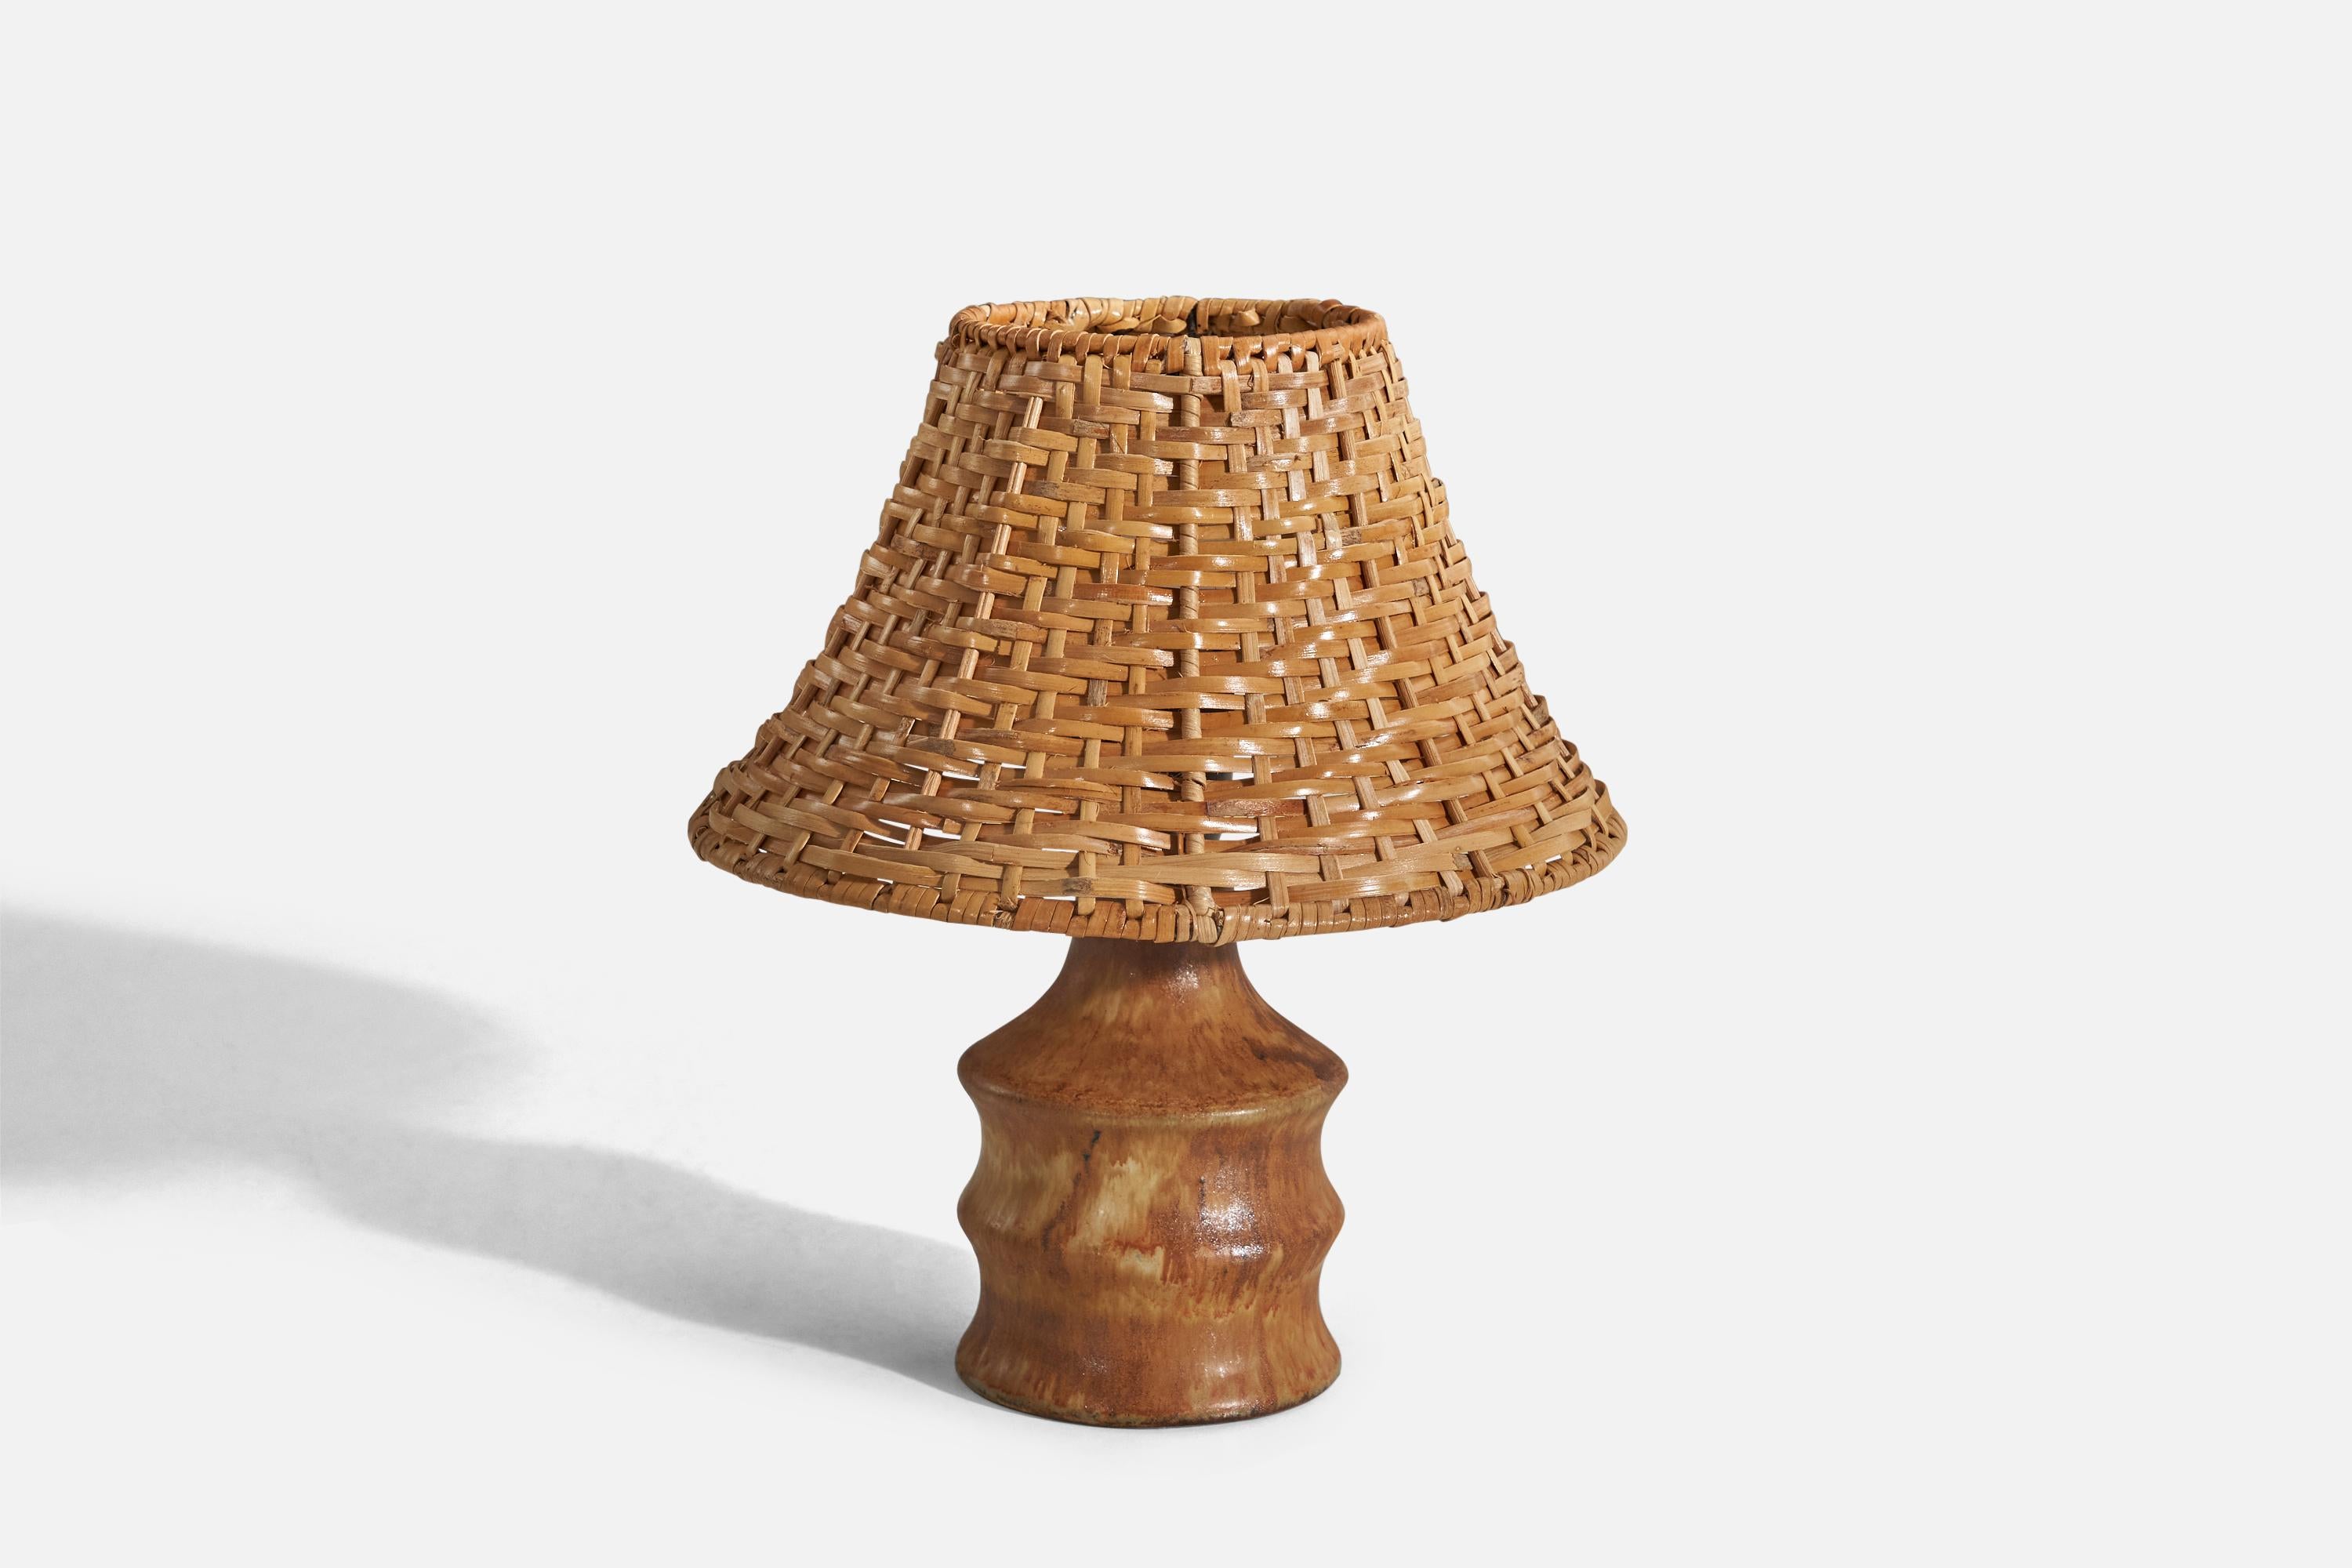 Lampe de table en grès émaillé brun, conçue par Bruno Karlsson et produite par Ego Stengods, Suède, vers les années 1960.

Vendu avec un abat-jour en rotin. 
Dimensions de la lampe (pouces) : 6.93 x 3,7 x 3,7 (Hauteur x Largeur x